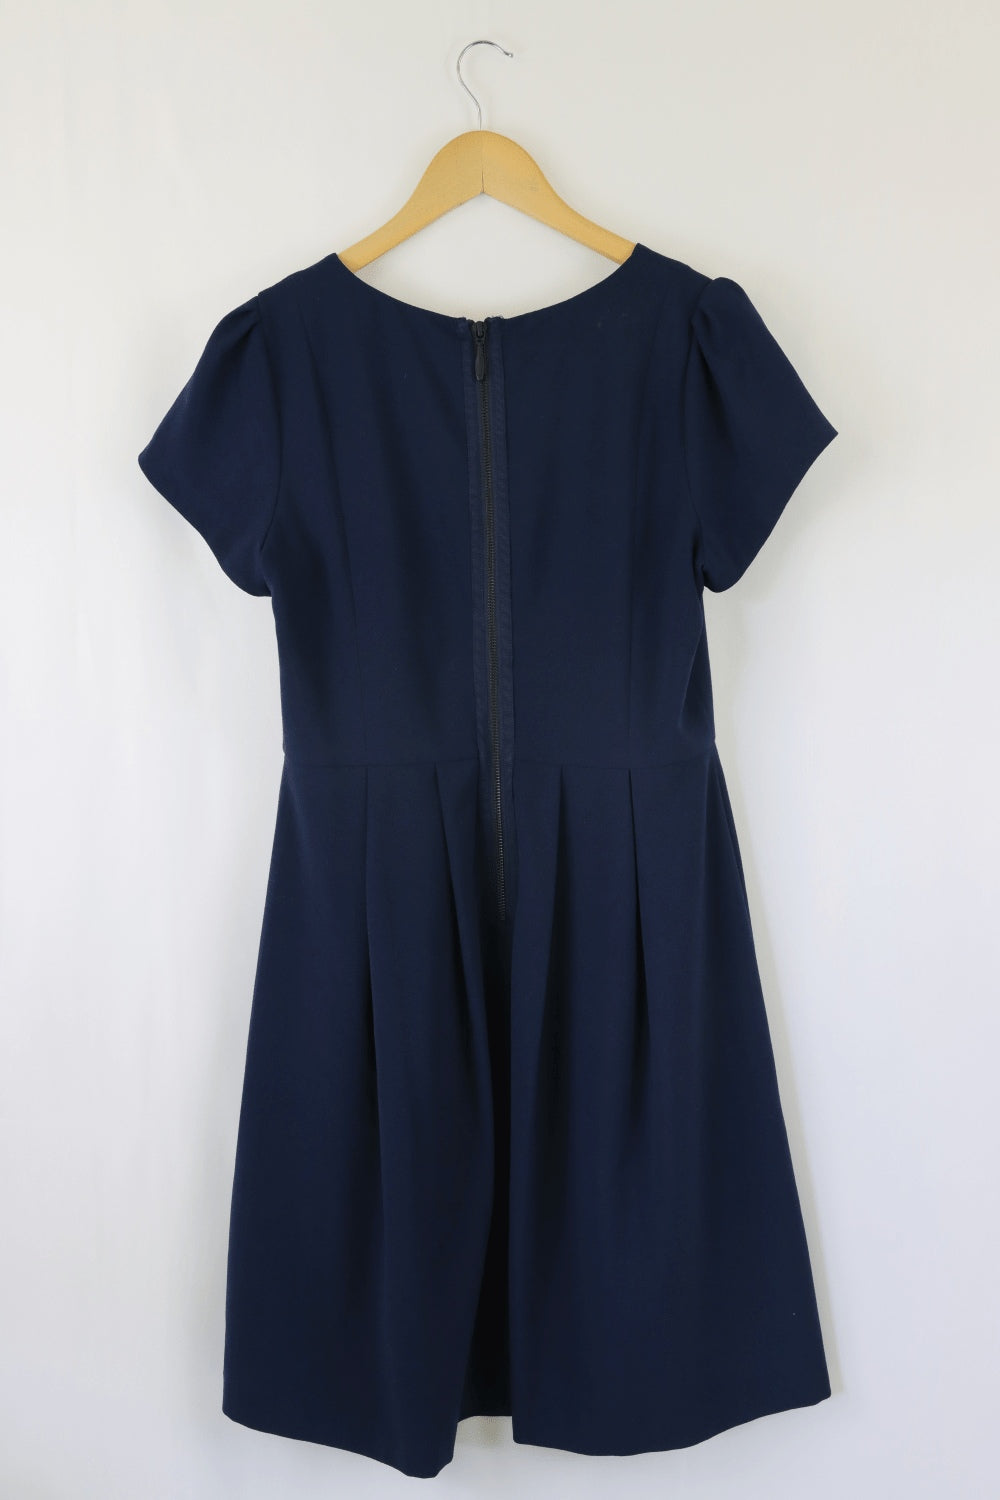 Jacqui E Blue Dress 12